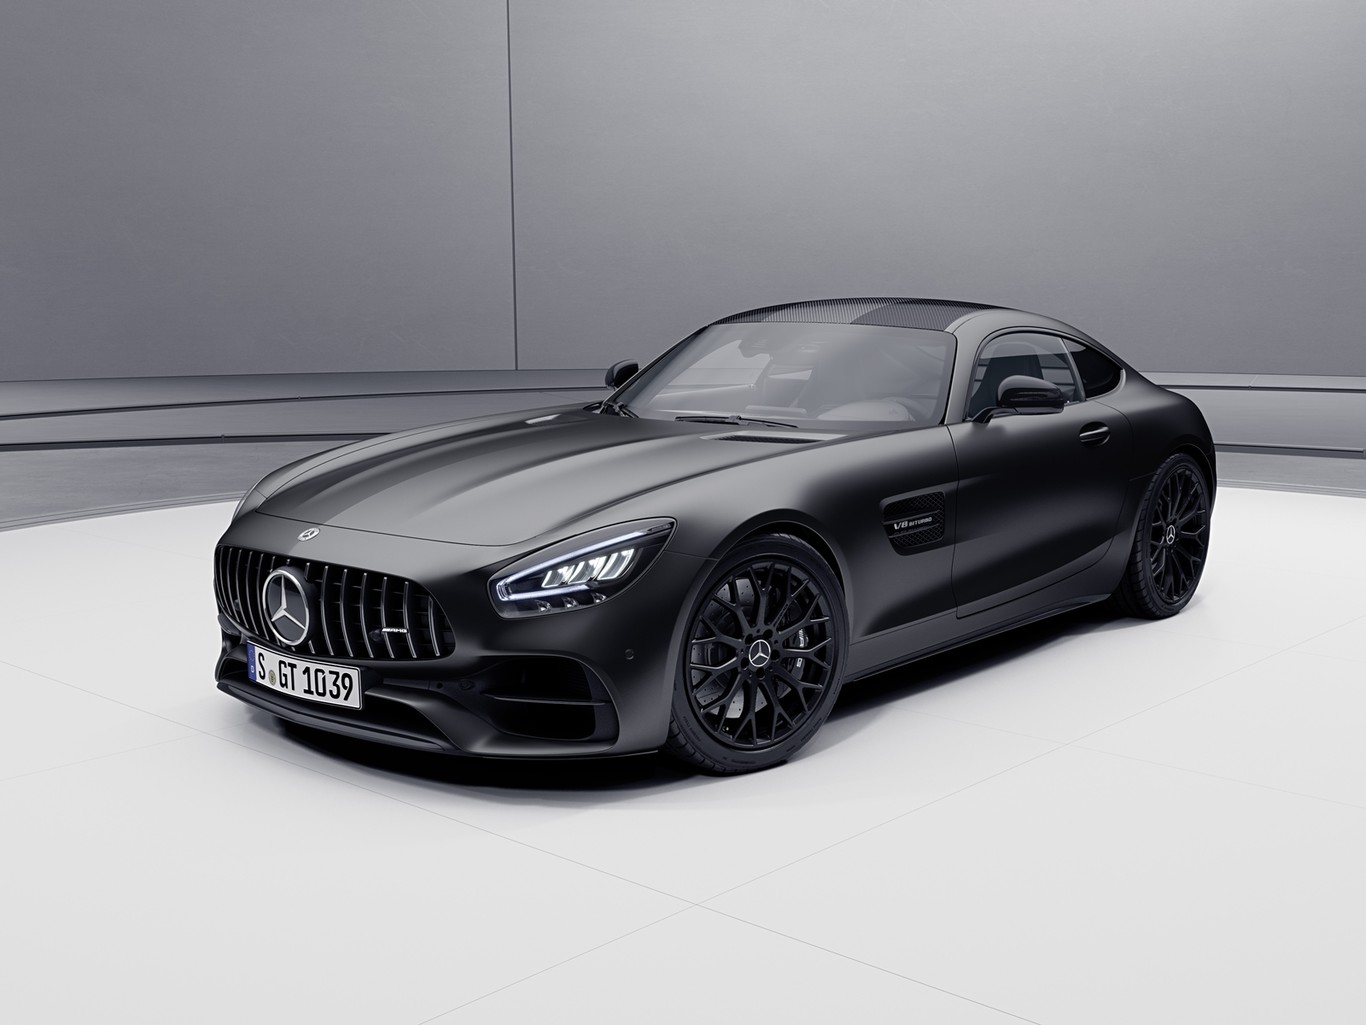 Mercedes-AMG: El Regreso Triunfal de los Motores V8